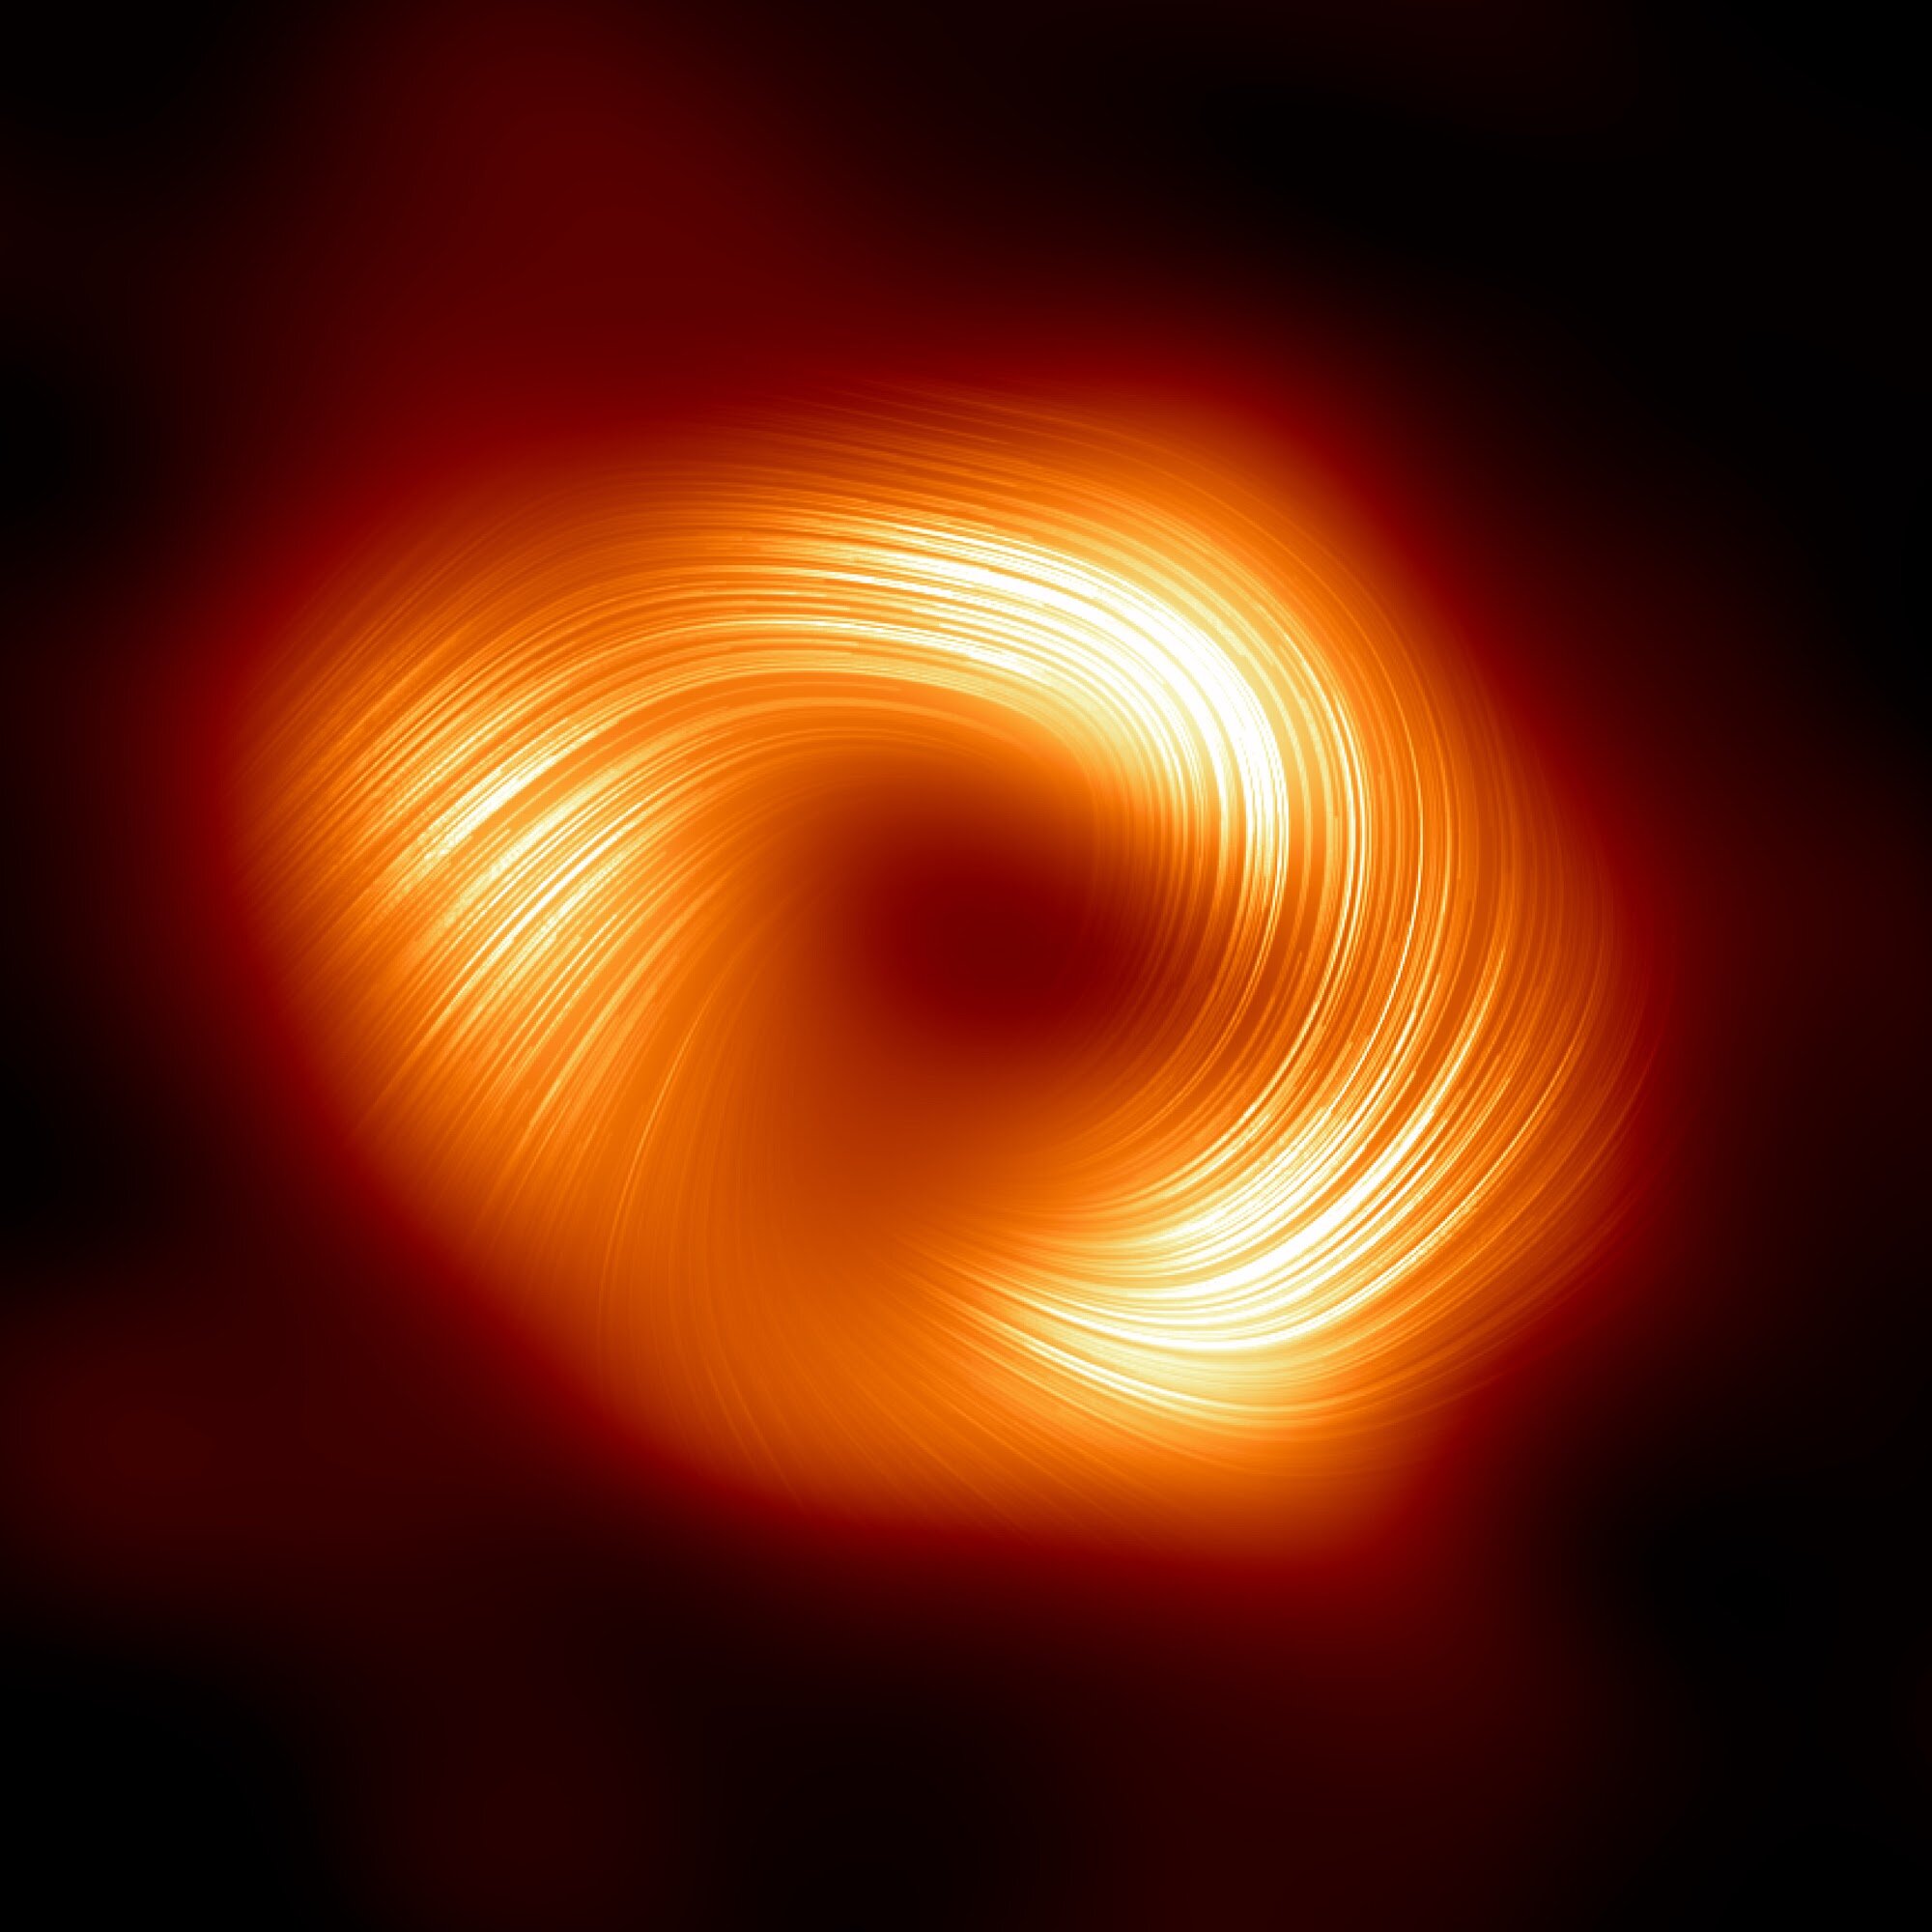 يكشف علماء الفلك عن مجالات مغناطيسية قوية تتصاعد عند حافة الثقب الأسود المركزي في درب التبانة